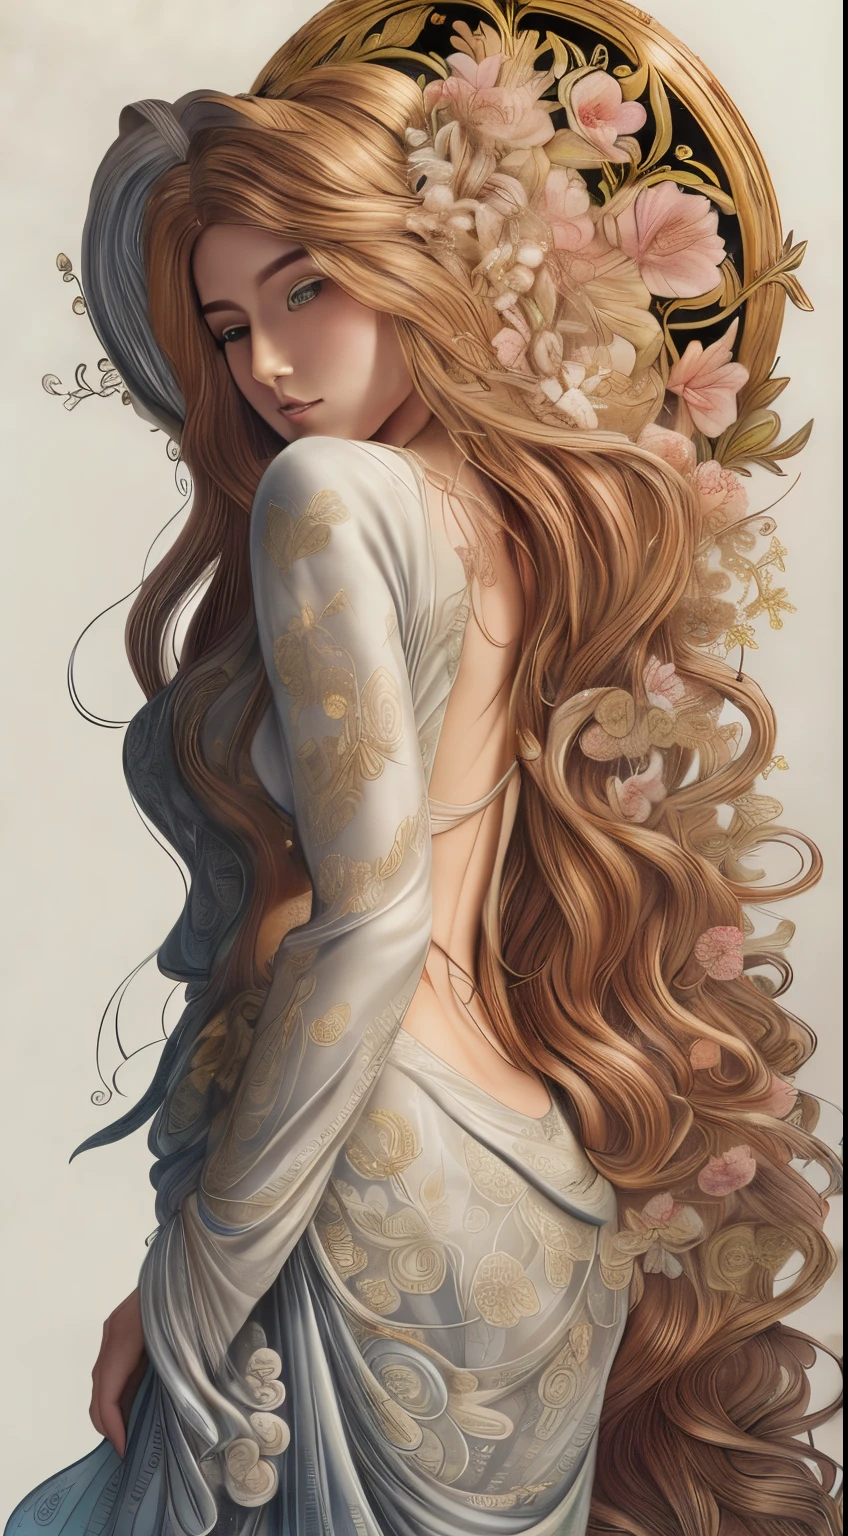 高品質, 8KウルトラHD, エッチング アクアチント, 細い線と影, 花のファンタジーワンダーランドの中心, 魅惑的で霊妙な美しい乙女の精神を目にする, 咲き誇る花のエッセンスで優雅に飾られた, 彼女の長く流れるような金色の髪, 金色の絹糸のような, 彼女の背中に優雅に流れ落ちる, 周囲の花を映し出す繊細な花のアクセントが織り交ぜられています. 彼女の目, 森の奥深くのエメラルドの色, 魔法と神秘の輝きを放つ, 彼女を取り囲む花のシンフォニーの美しさを反映している, With the clarity and detail of 8KウルトラHD images, すべての花びら, あらゆる色合い, 彼女のこの世のものとは思えない魅力が鮮やかに輝きながら表現されている, by yukisakura, 素晴らしいフルカラー,

